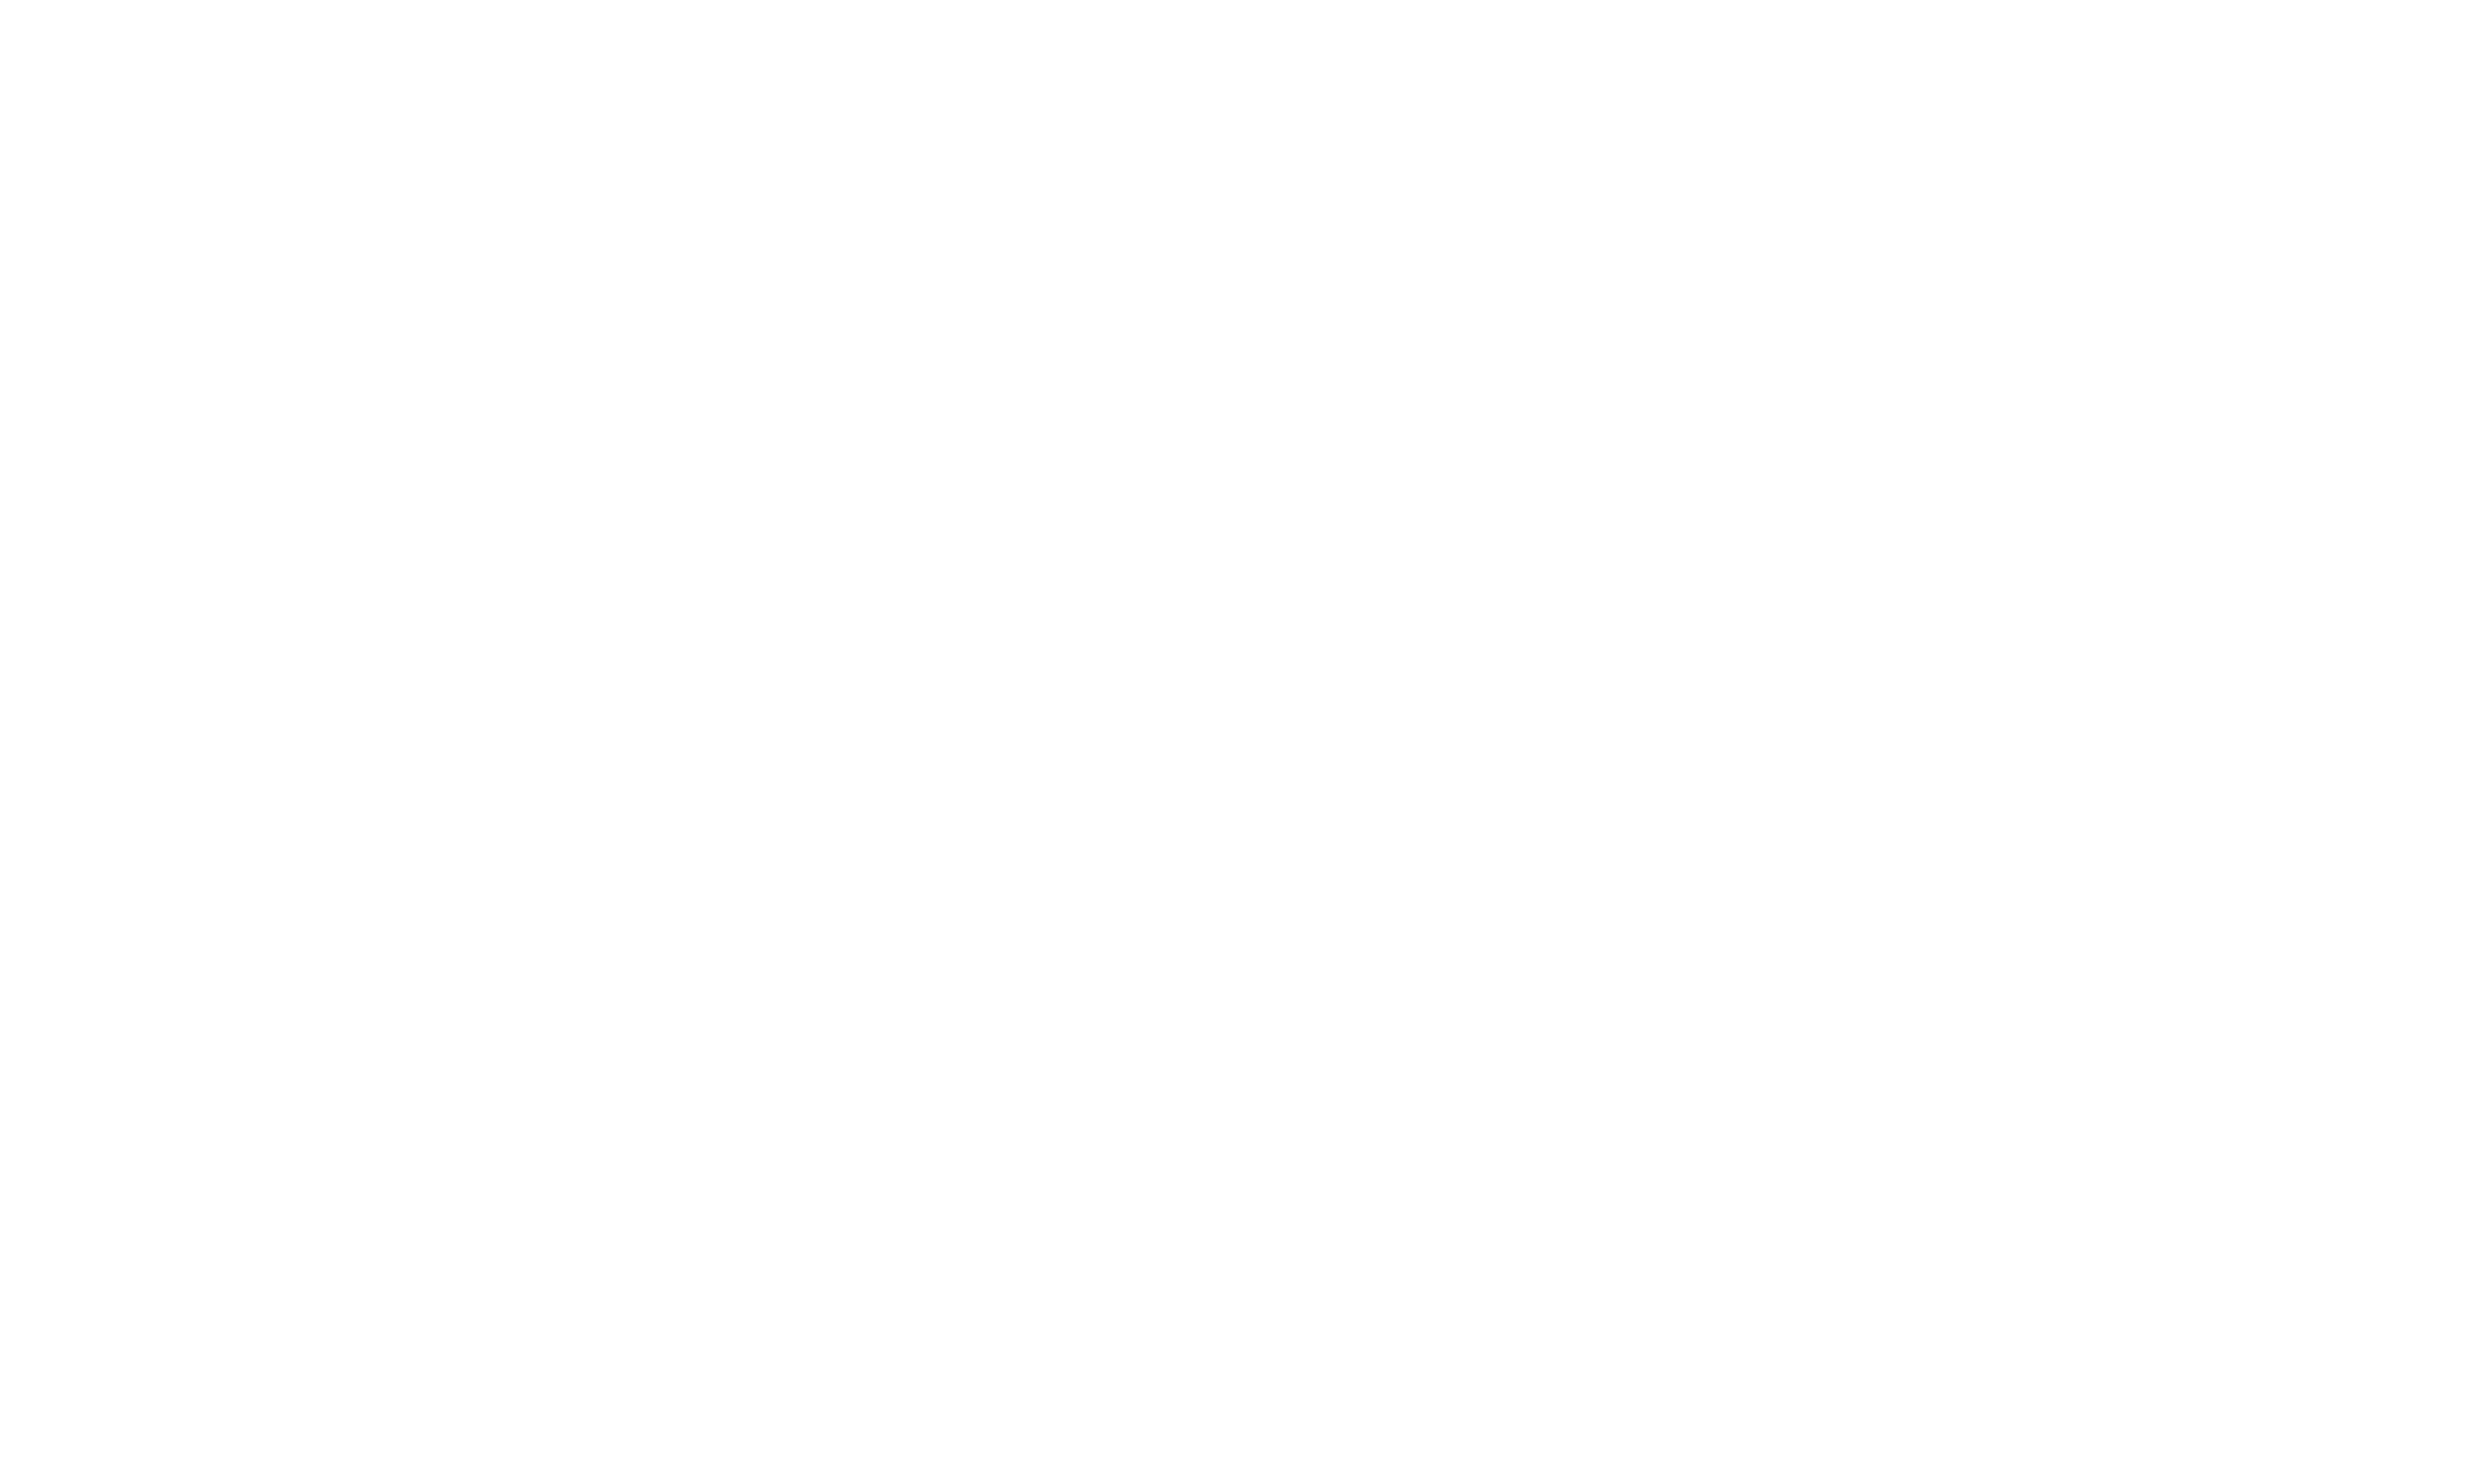 Julie Nails